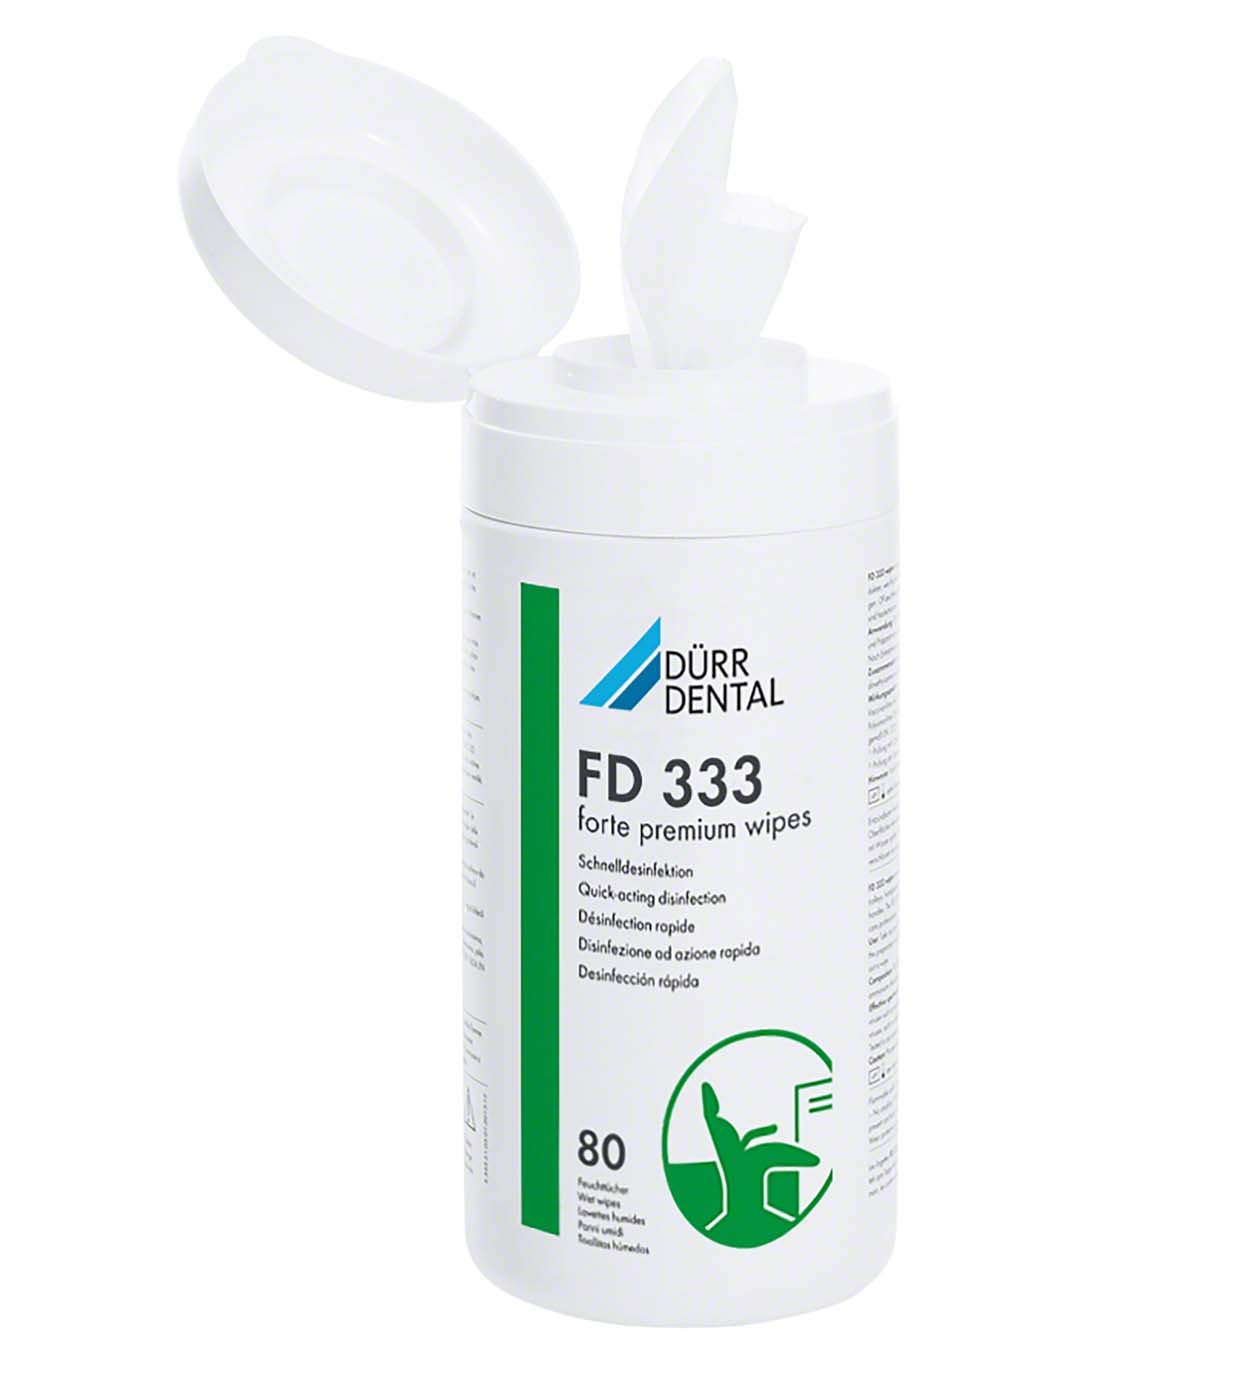 FD 333 forte premium wipes Flächen-Desinfektion Dürr Dental